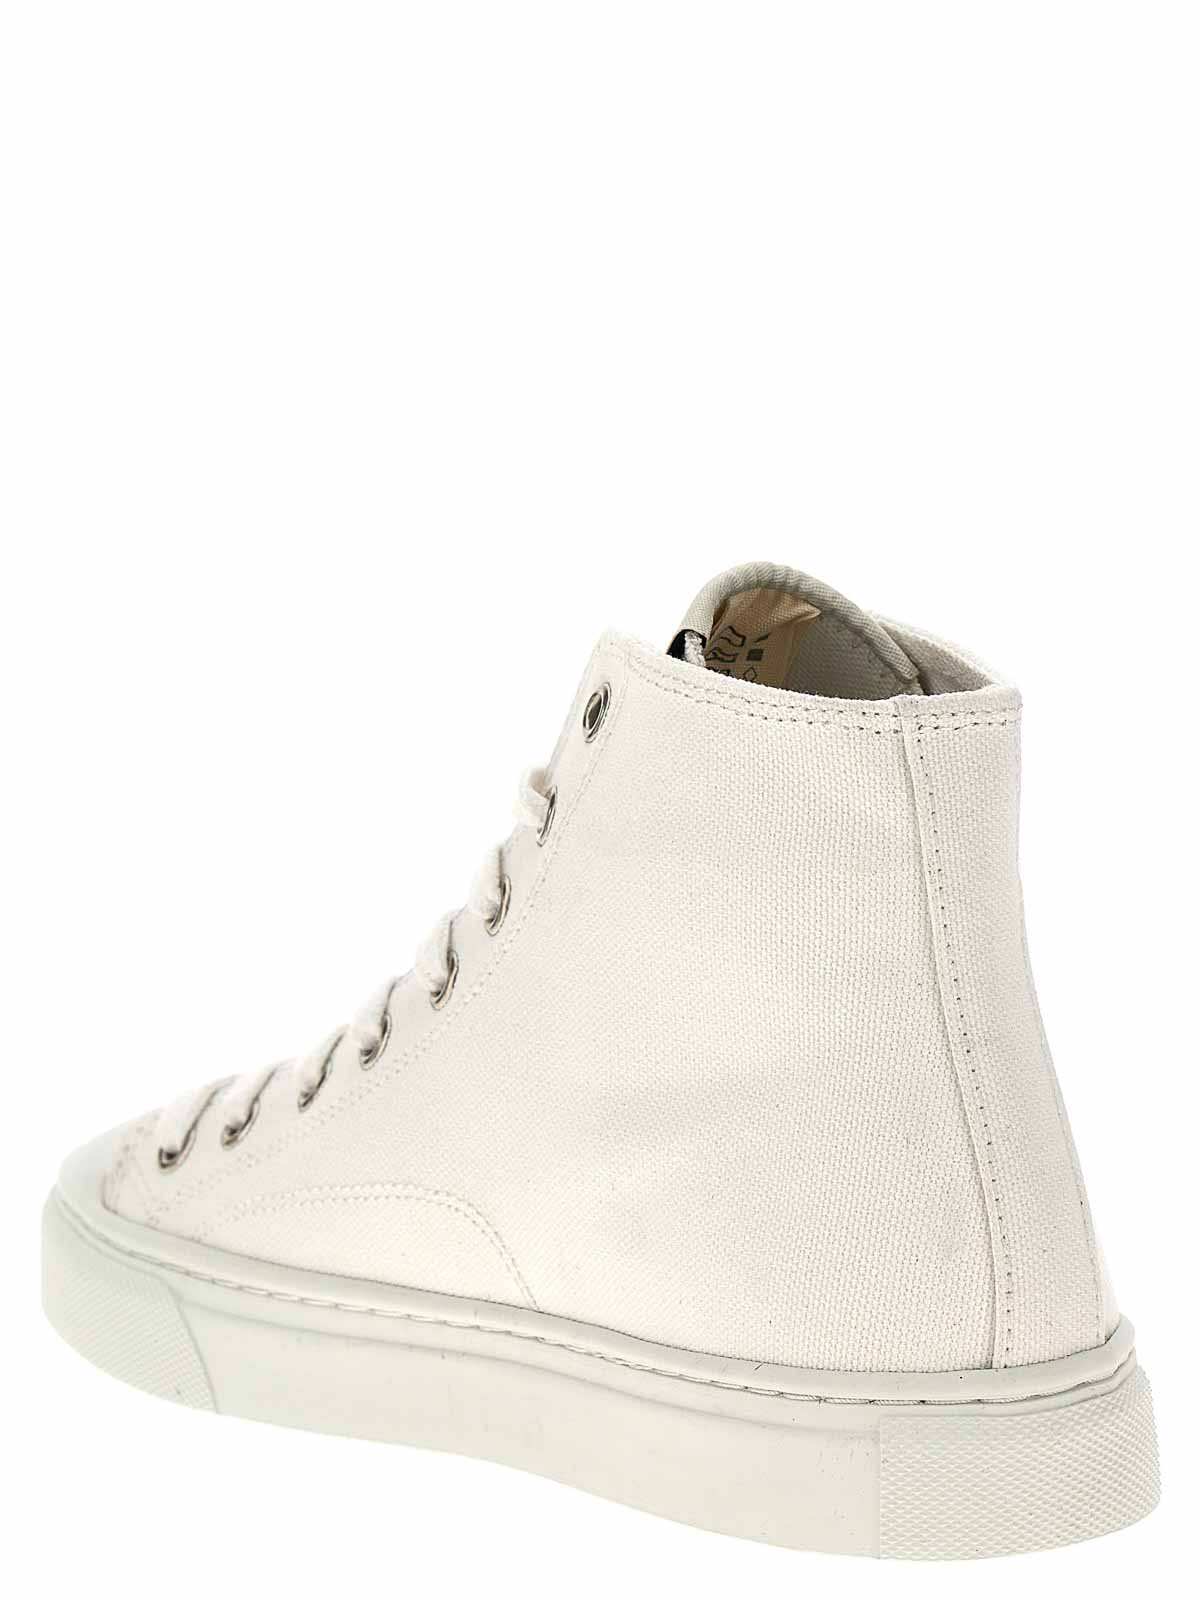 Shop Vivienne Westwood Plimsoll Sneakers In White